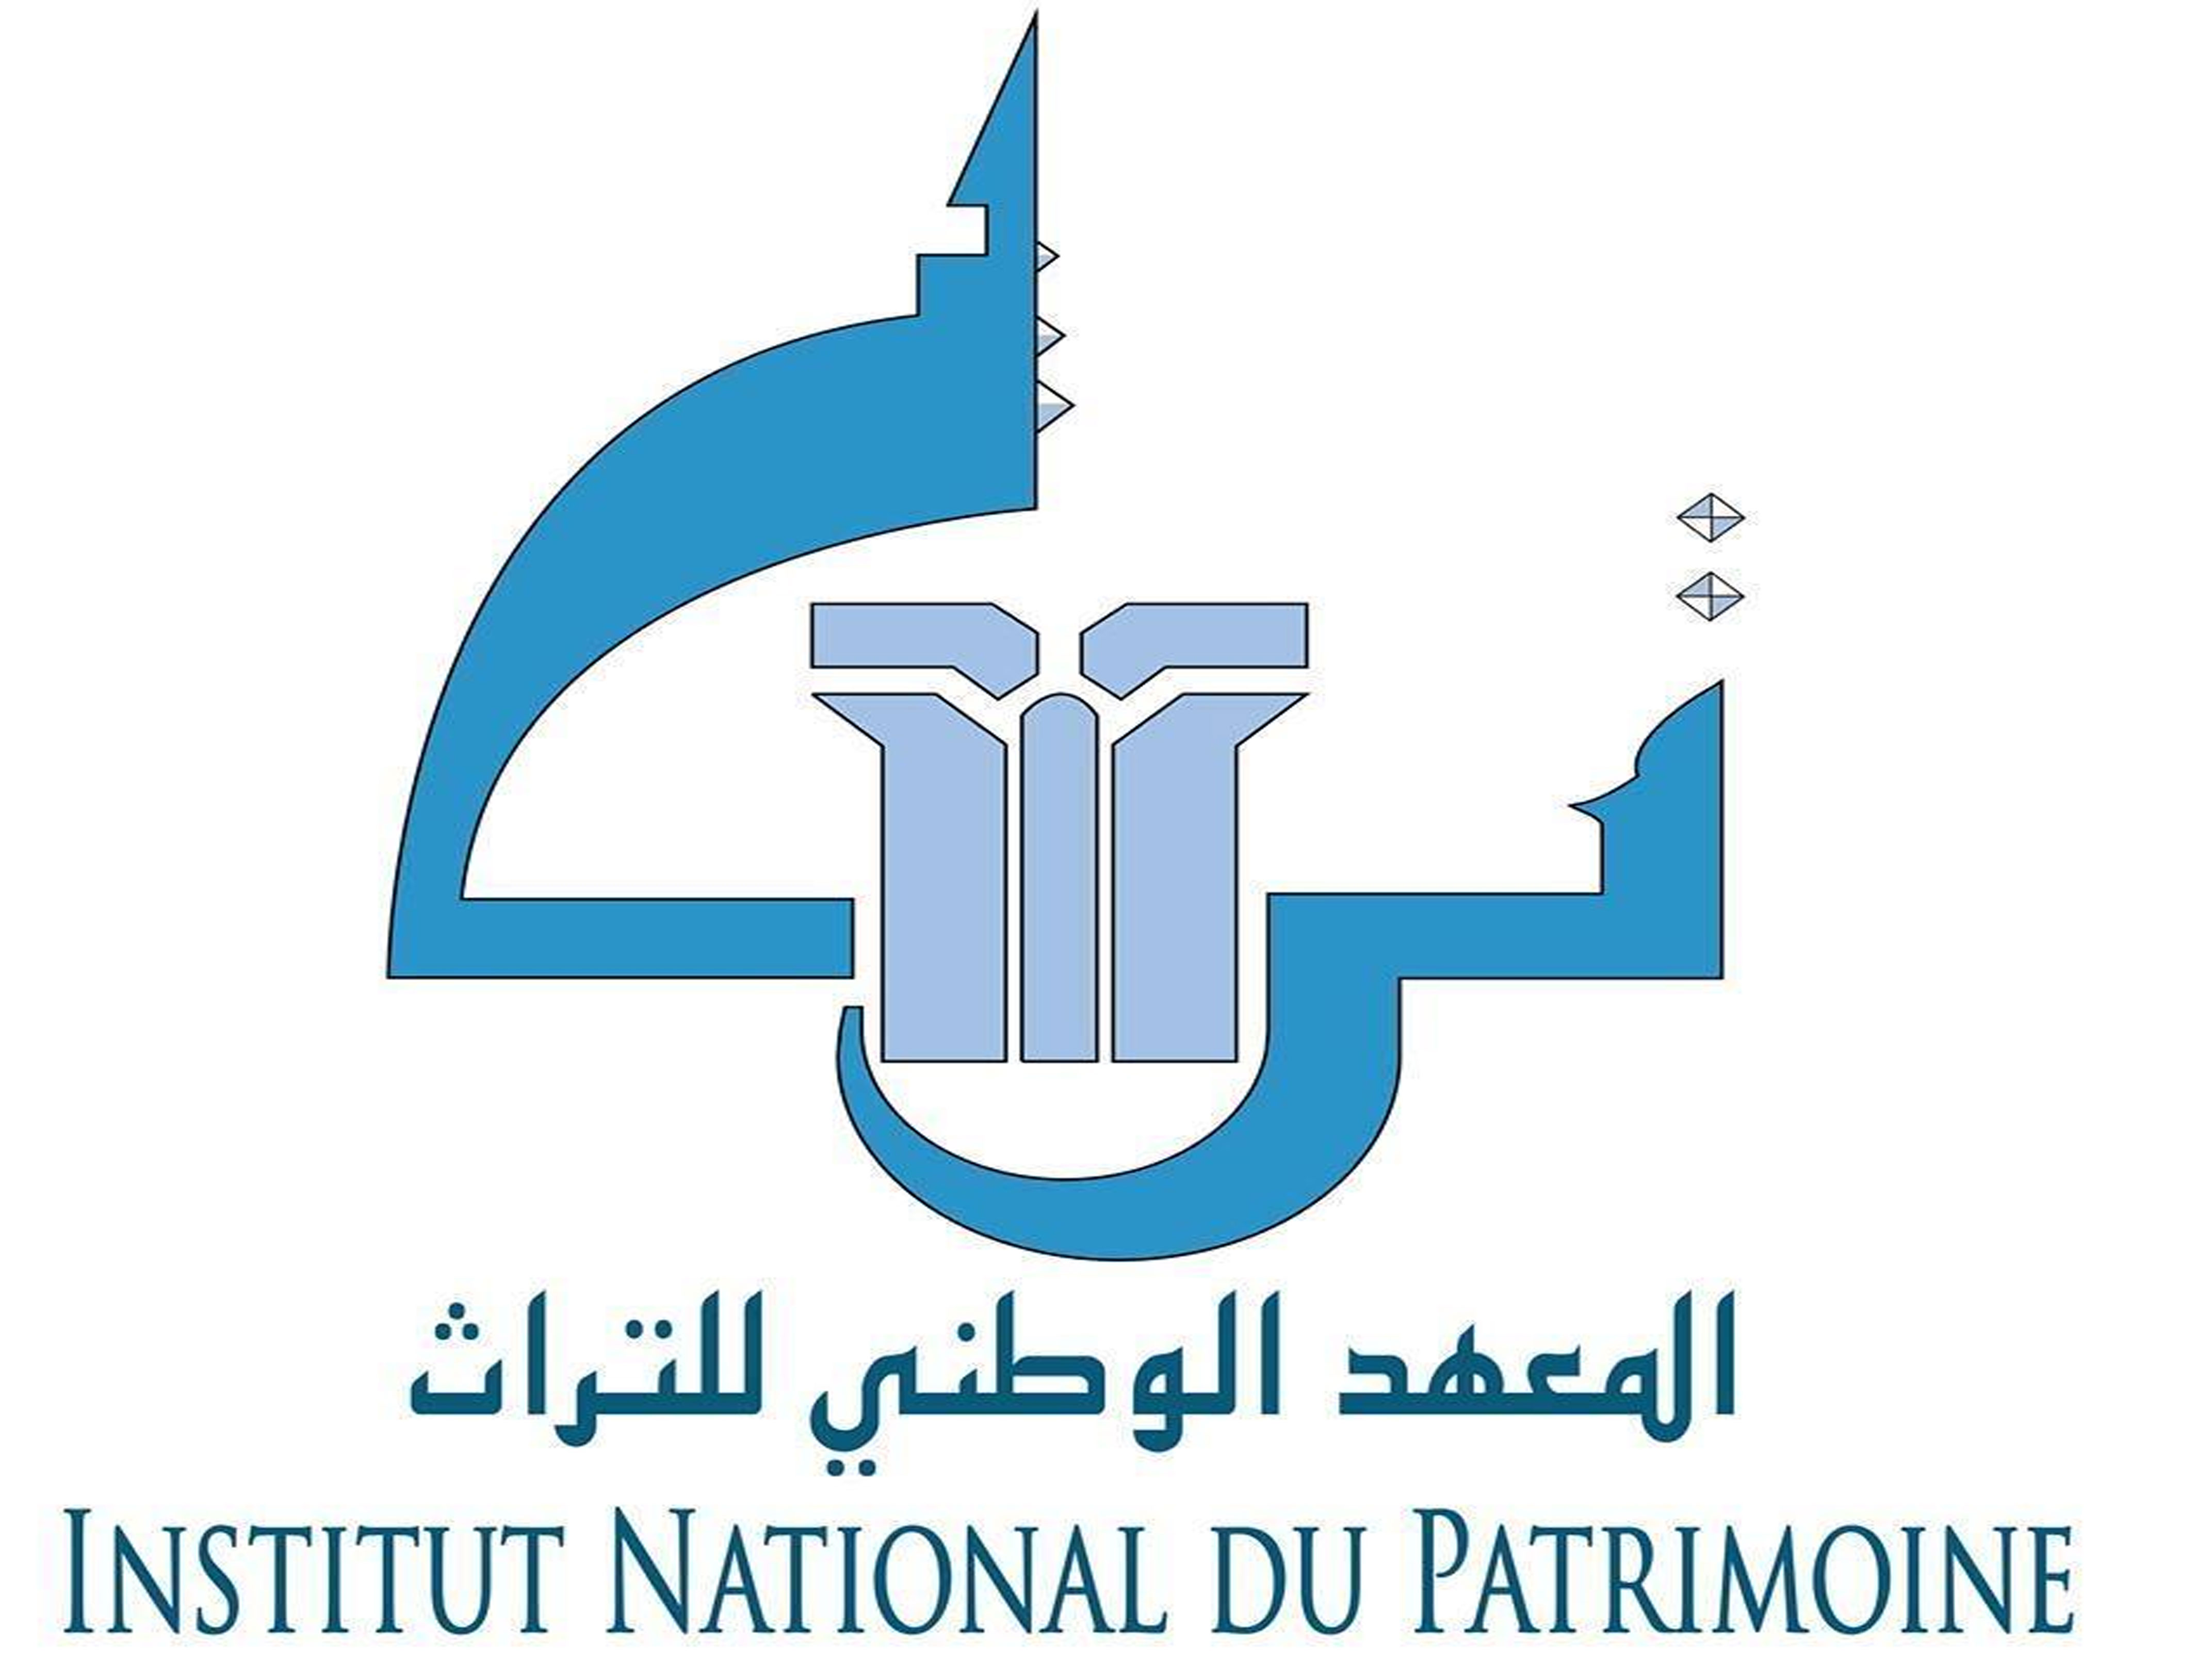 National heritage institute